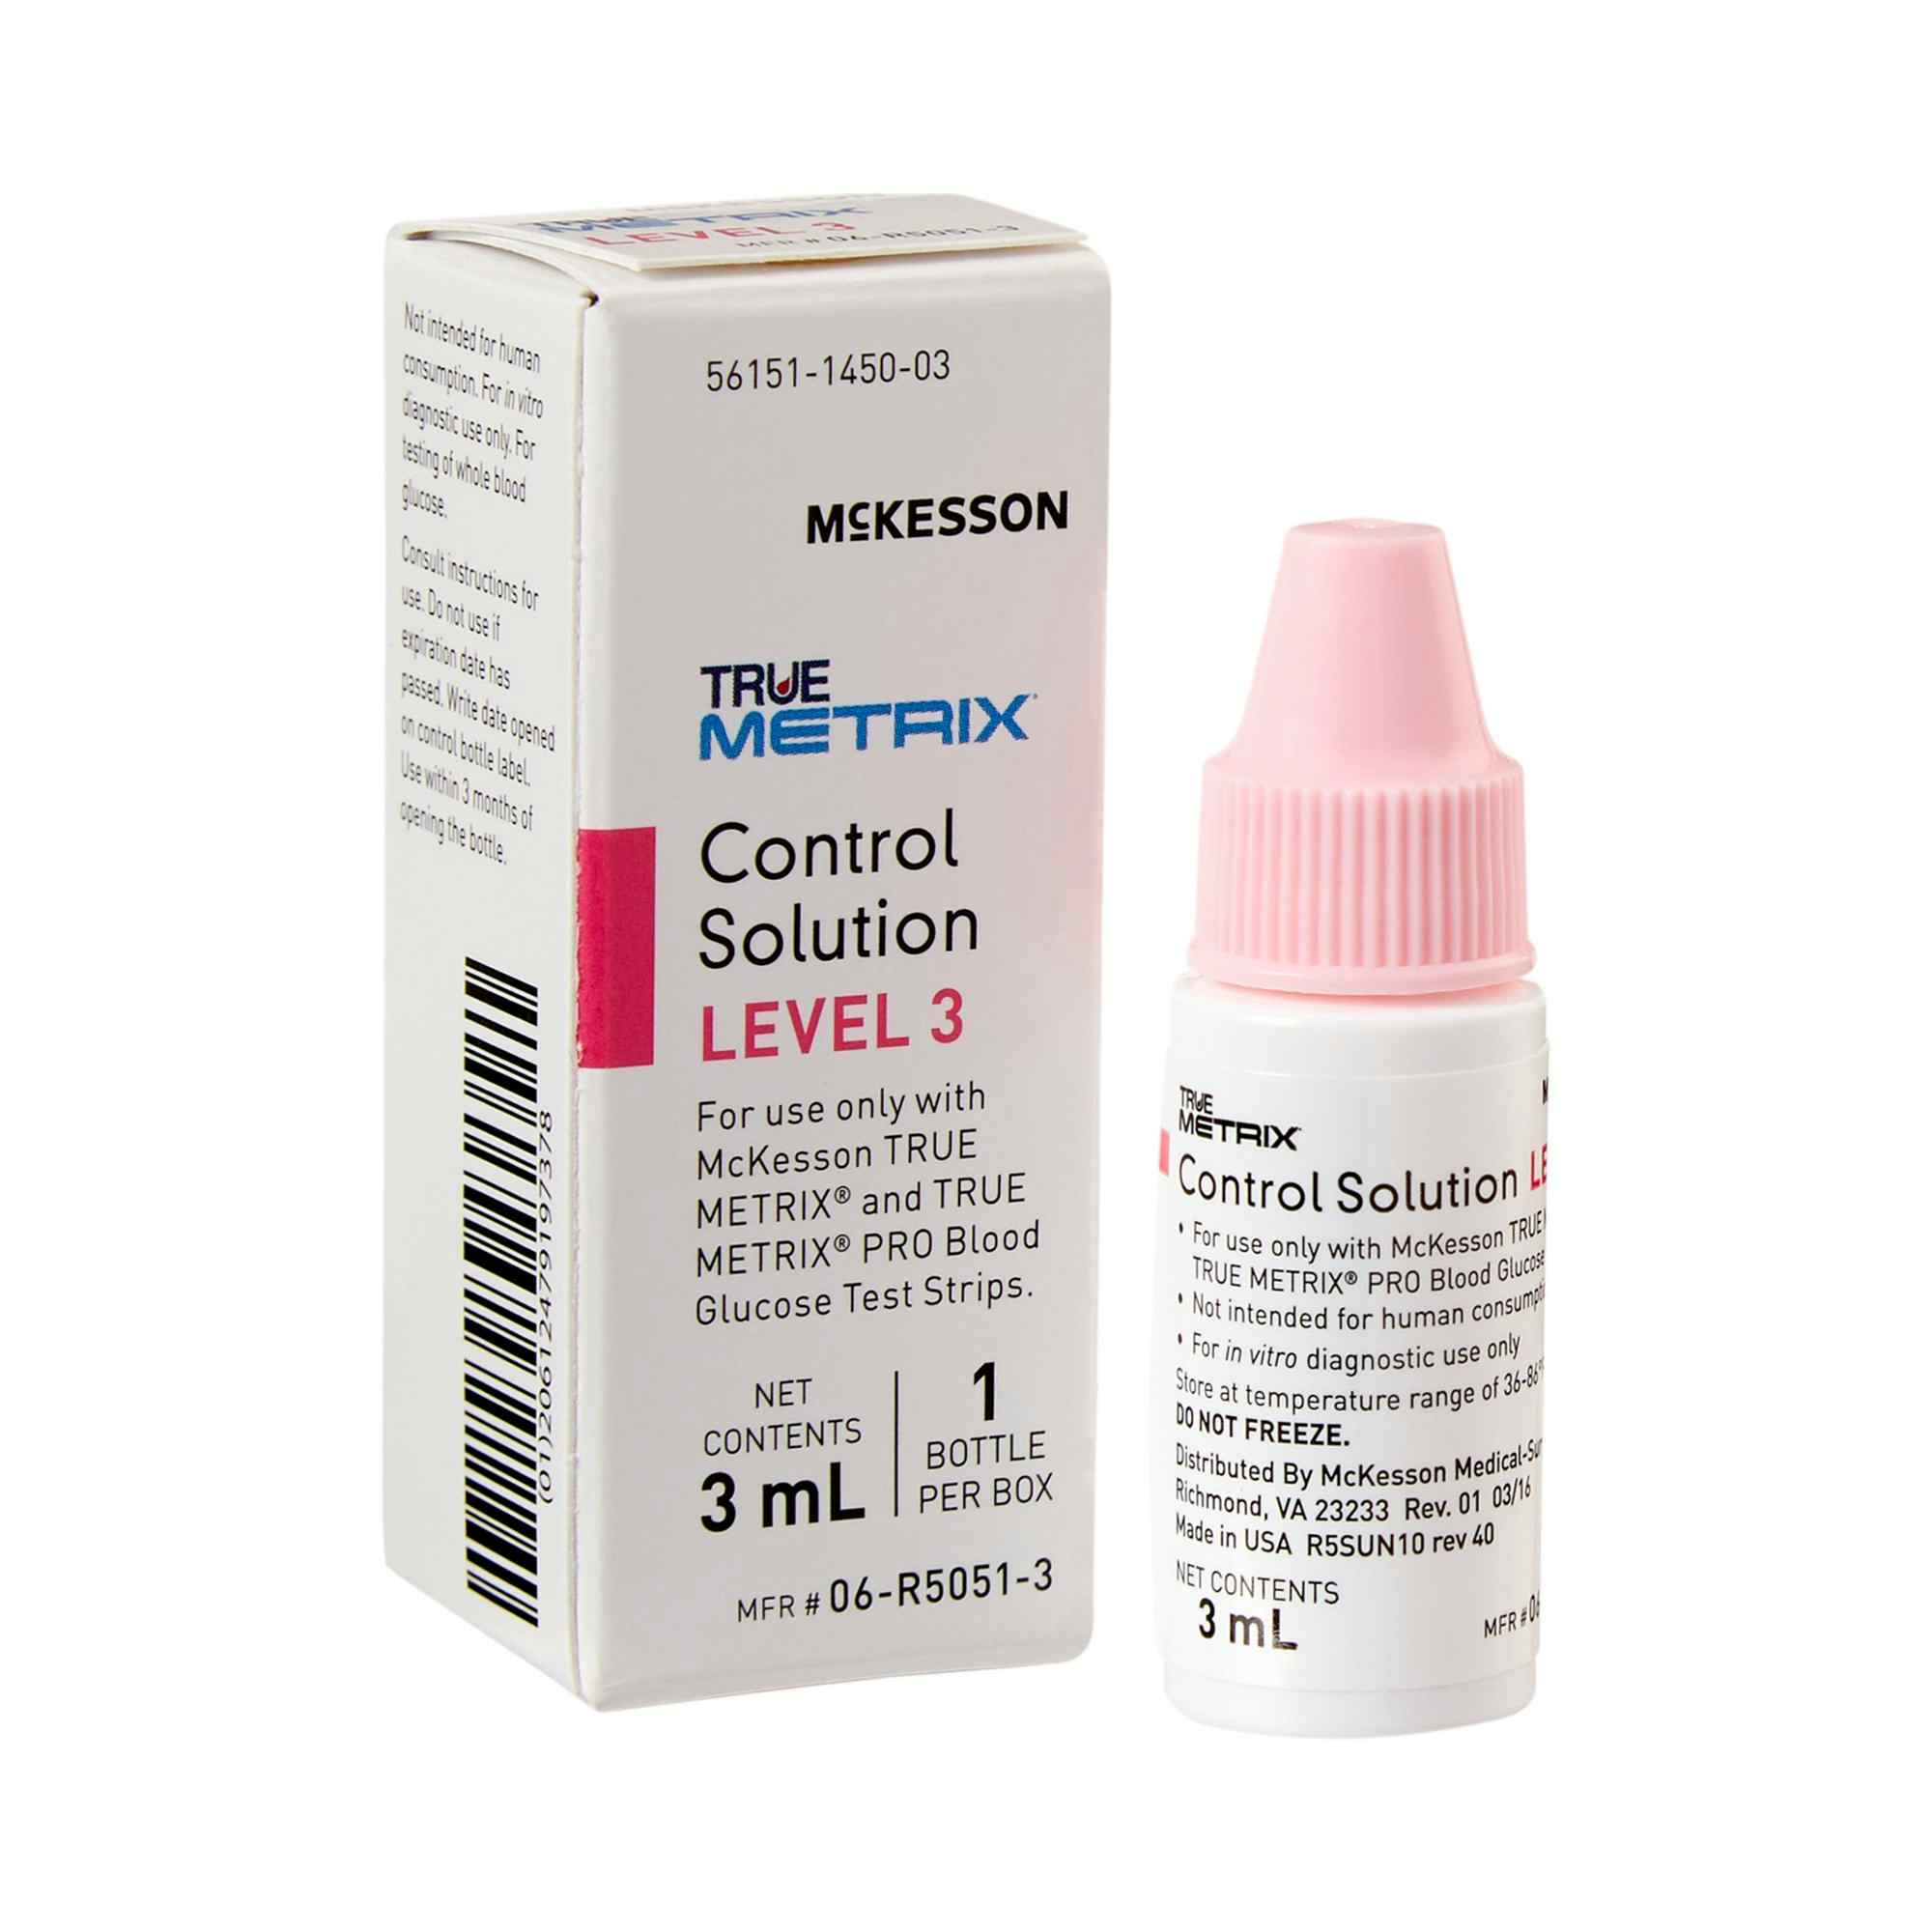 McKesson TRUE METRIX Control Solution, 3 mL Level 3, 06-R5051-3, 1 Box